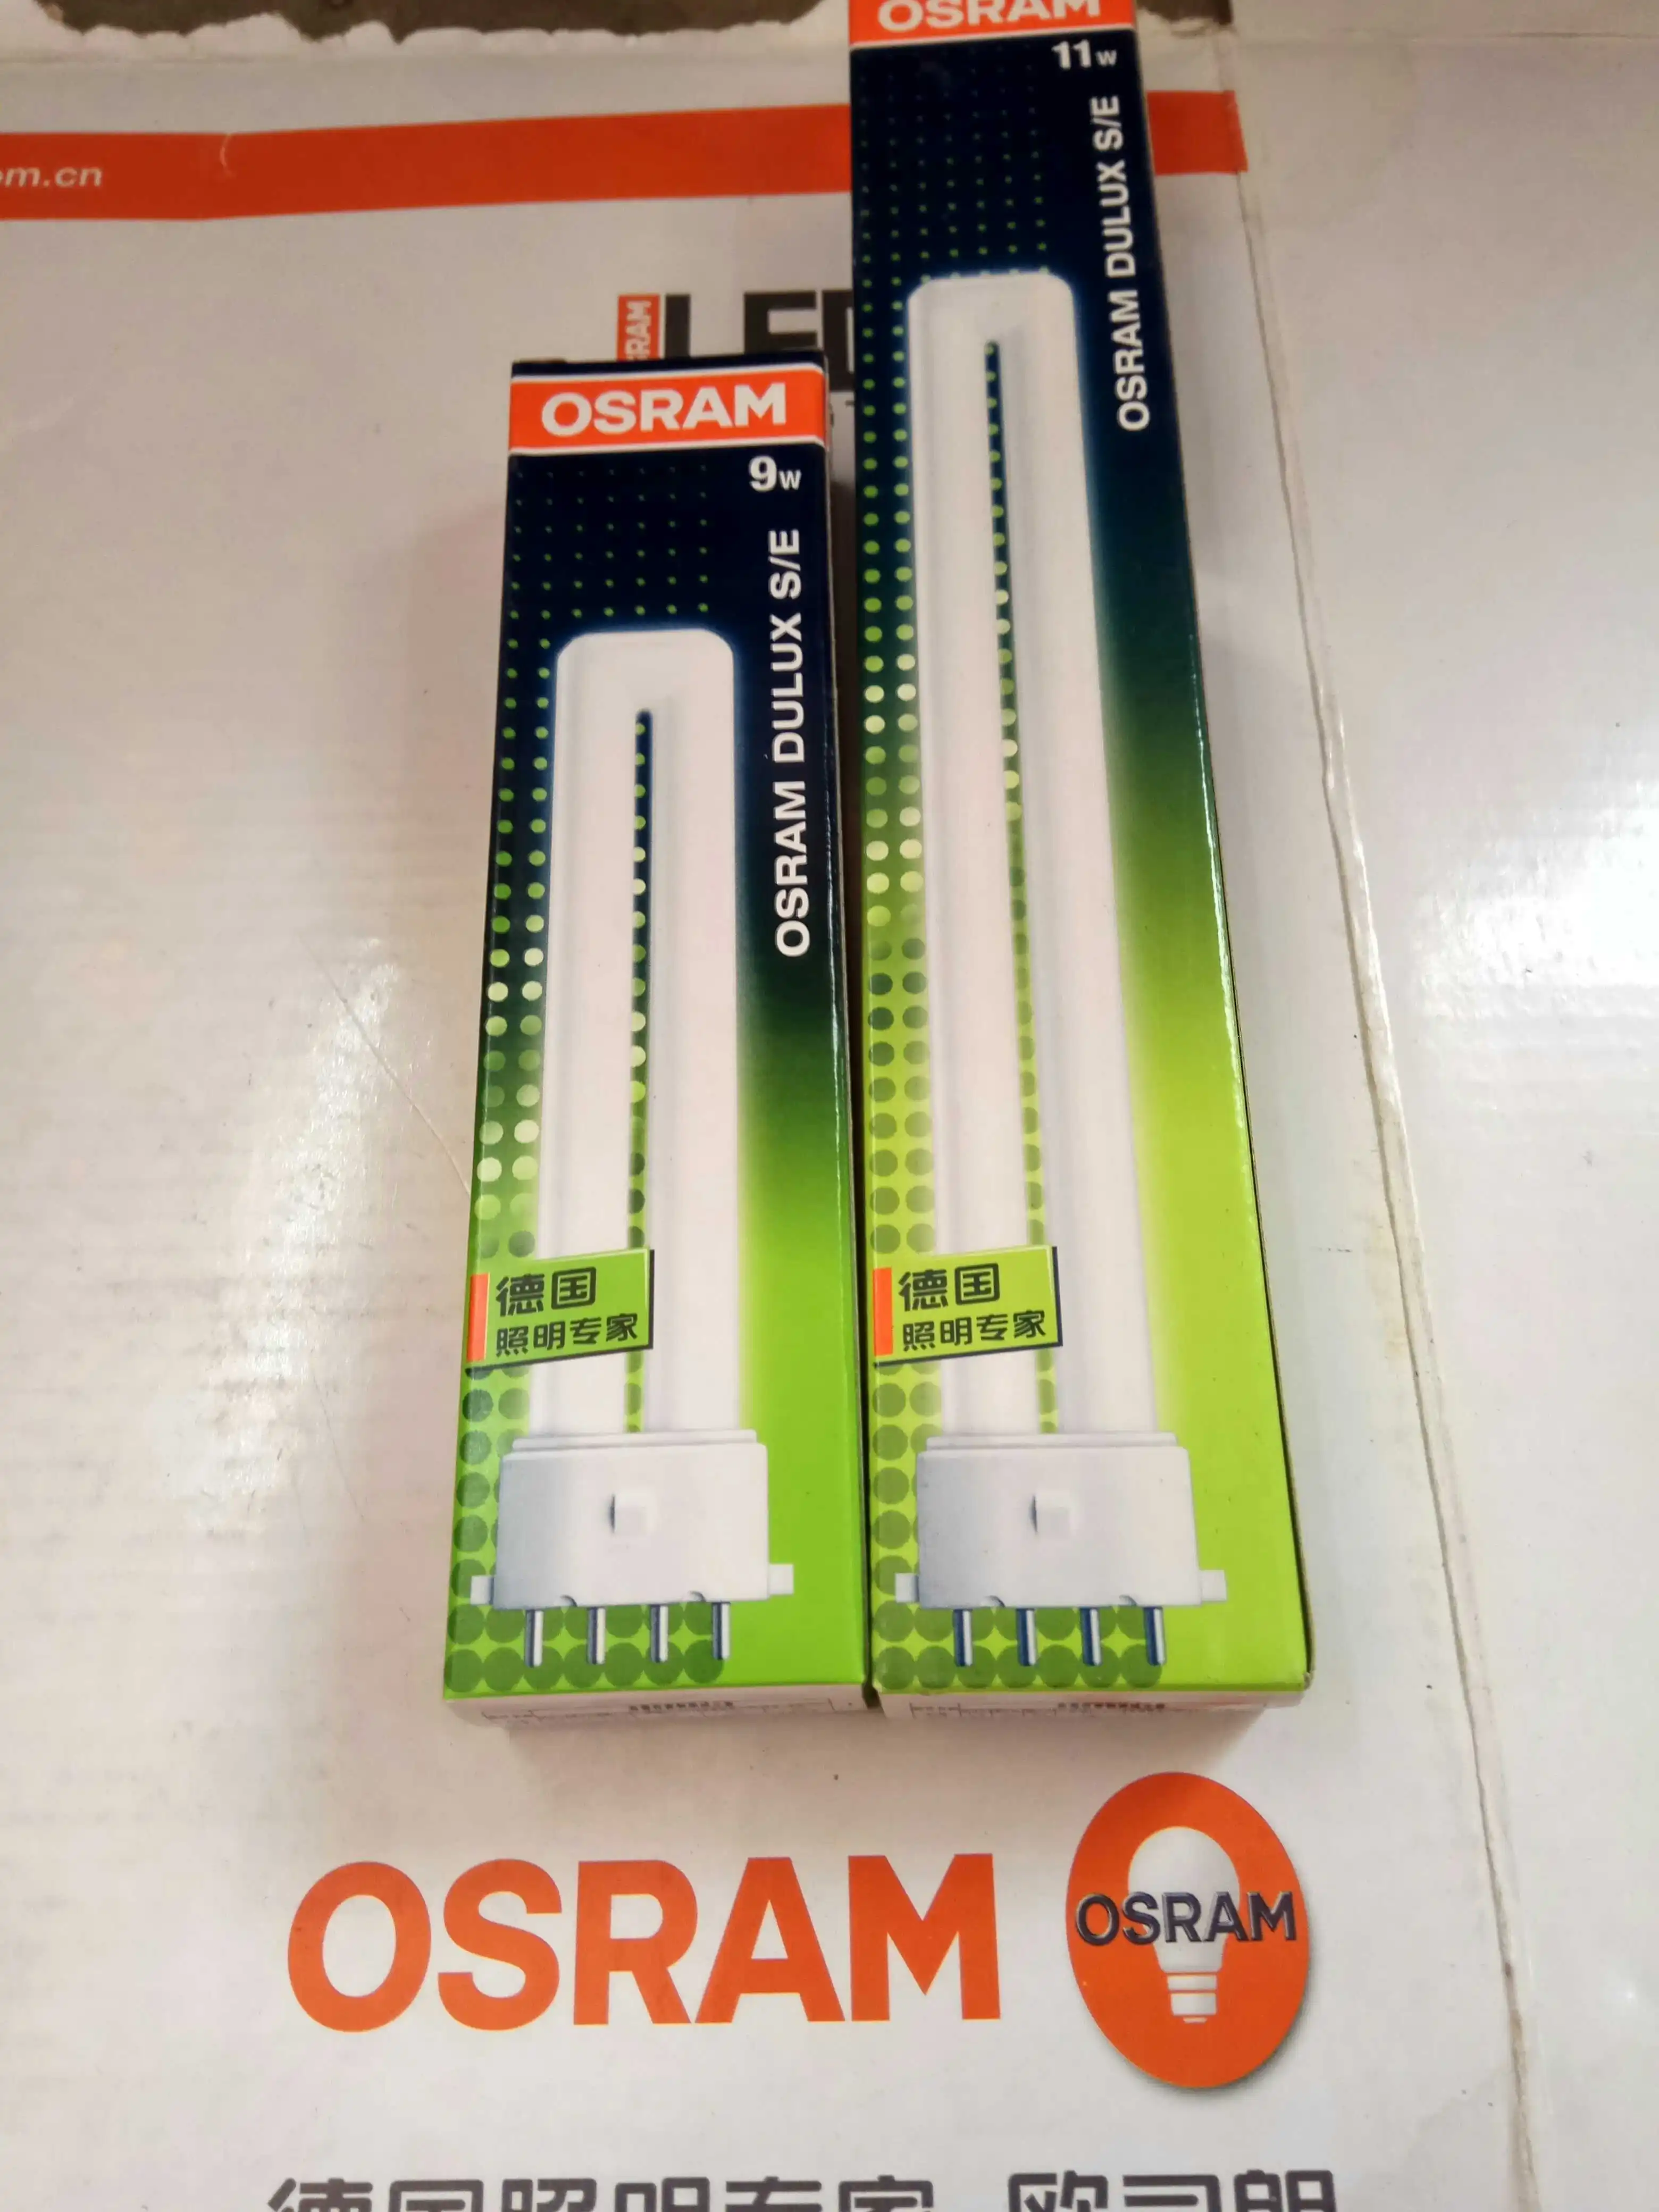 CW S/E OSRAM DSE114 LAMP DULUX 11W 50 pieces